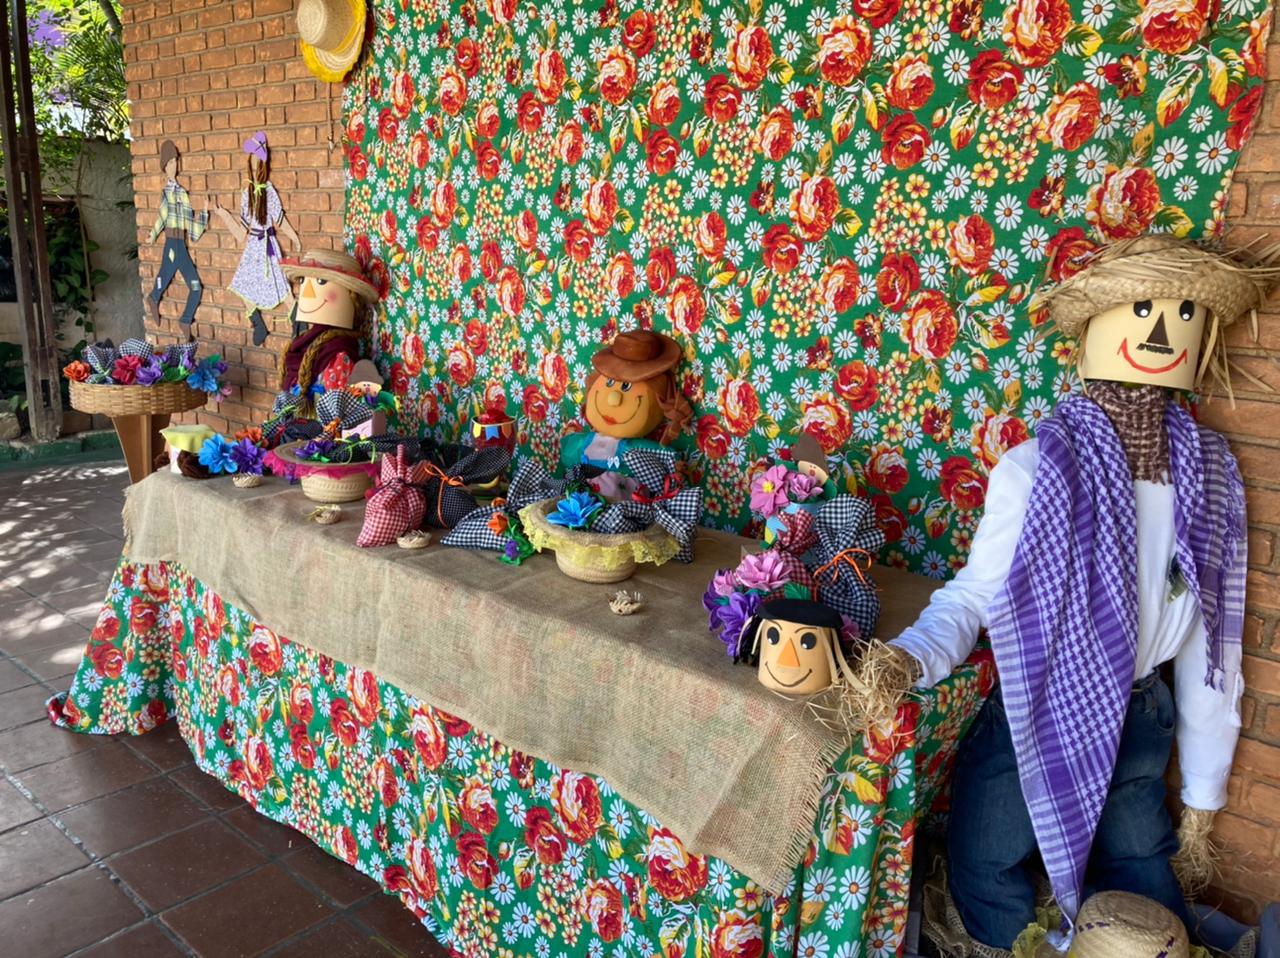 Mesa decorada com estampas características de festa junina, saquinhos de doces, bonecos com chapéus de palha e roupas típicas da festa.